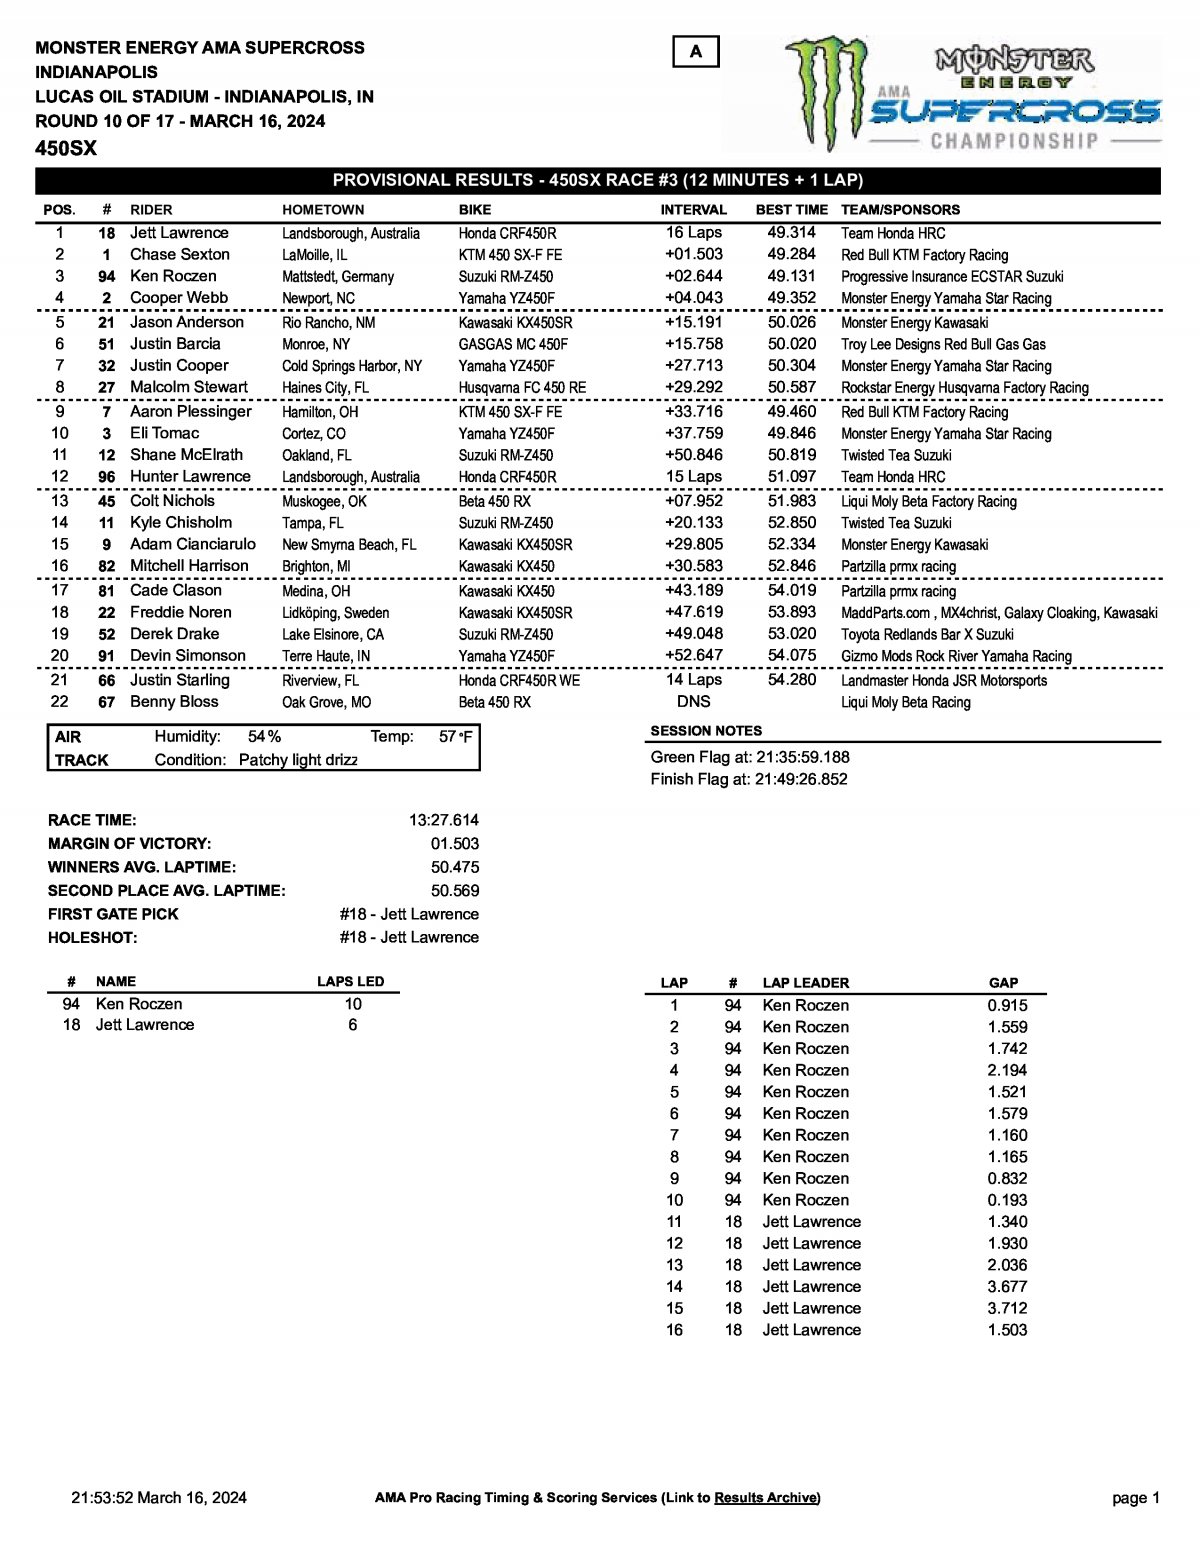 Результаты 3 гонки Тройной Короны Индианаполиса - AMA Supercross 450SX (16/03/2024)